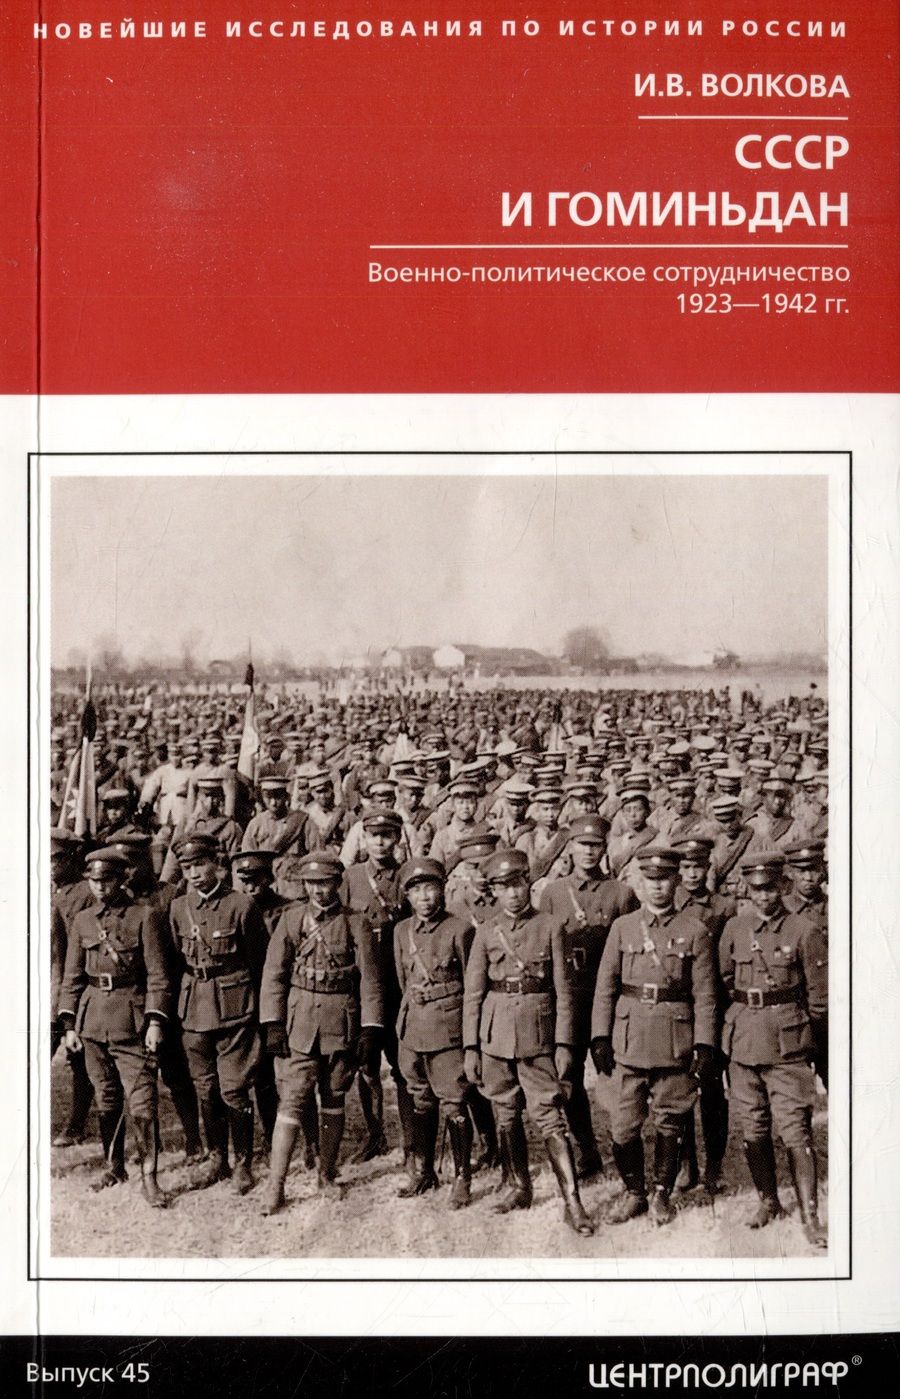 Обложка книги "Волкова: СССР и Гоминьдан. 1923-1942 гг."